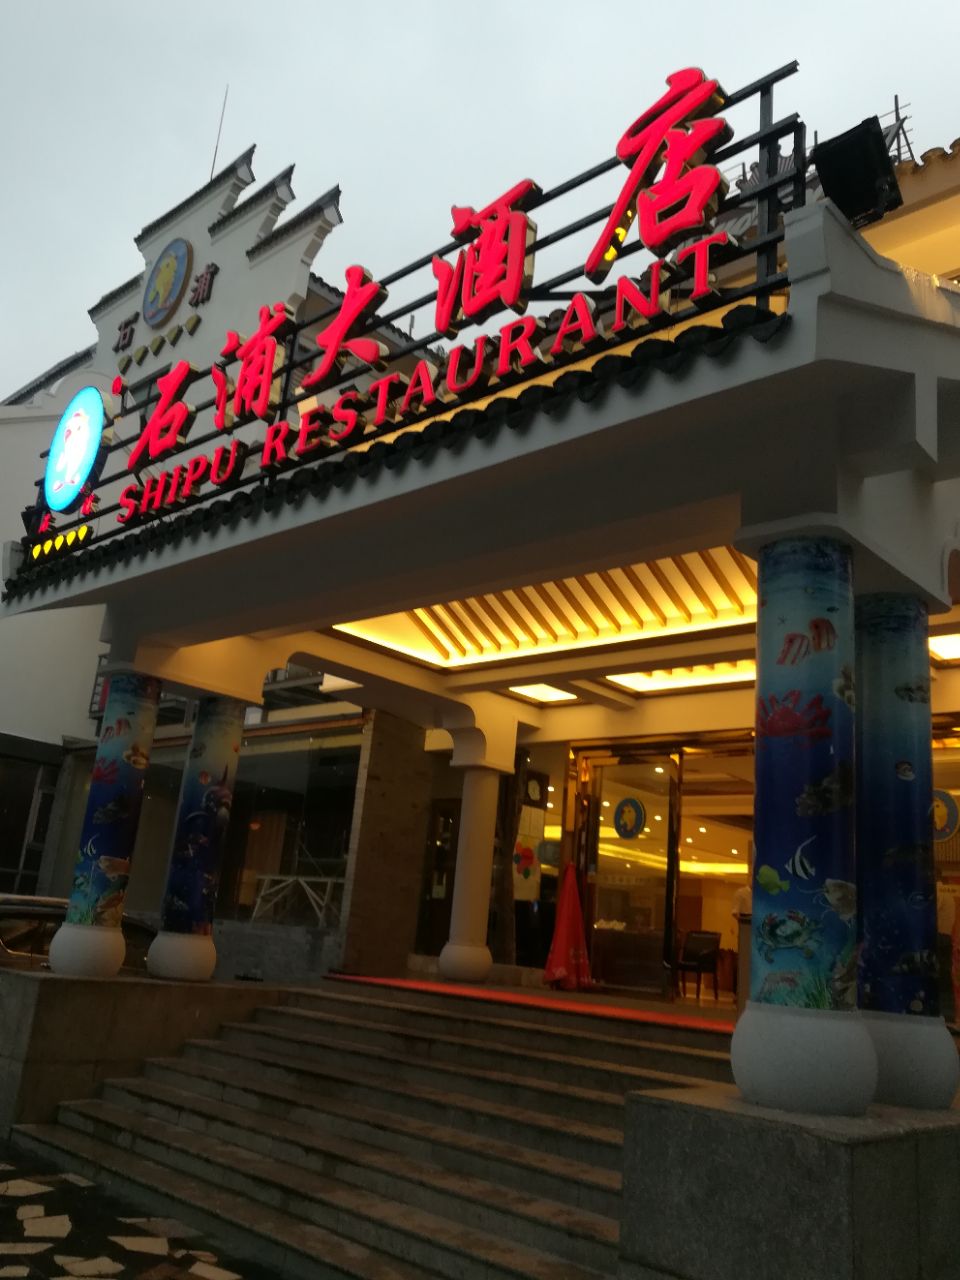 石浦海味饭店(月湖店)现在称为石浦大酒店,是携程旅行网美食林臻选